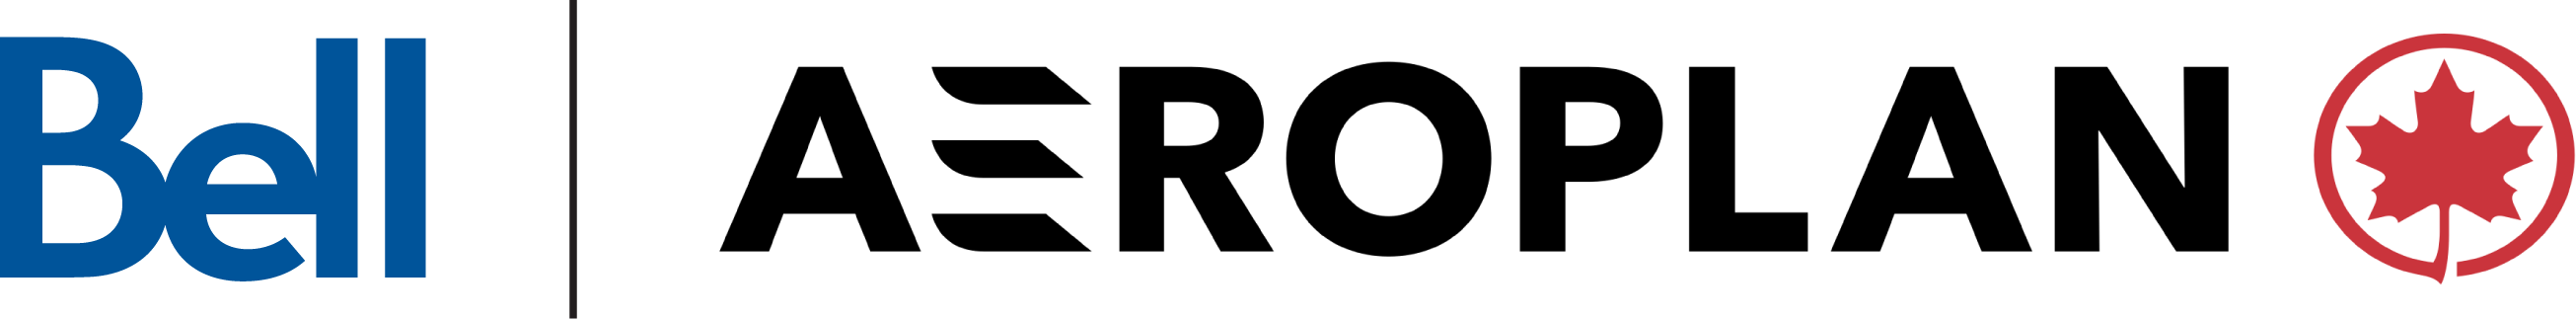 bell and aeroplan logo